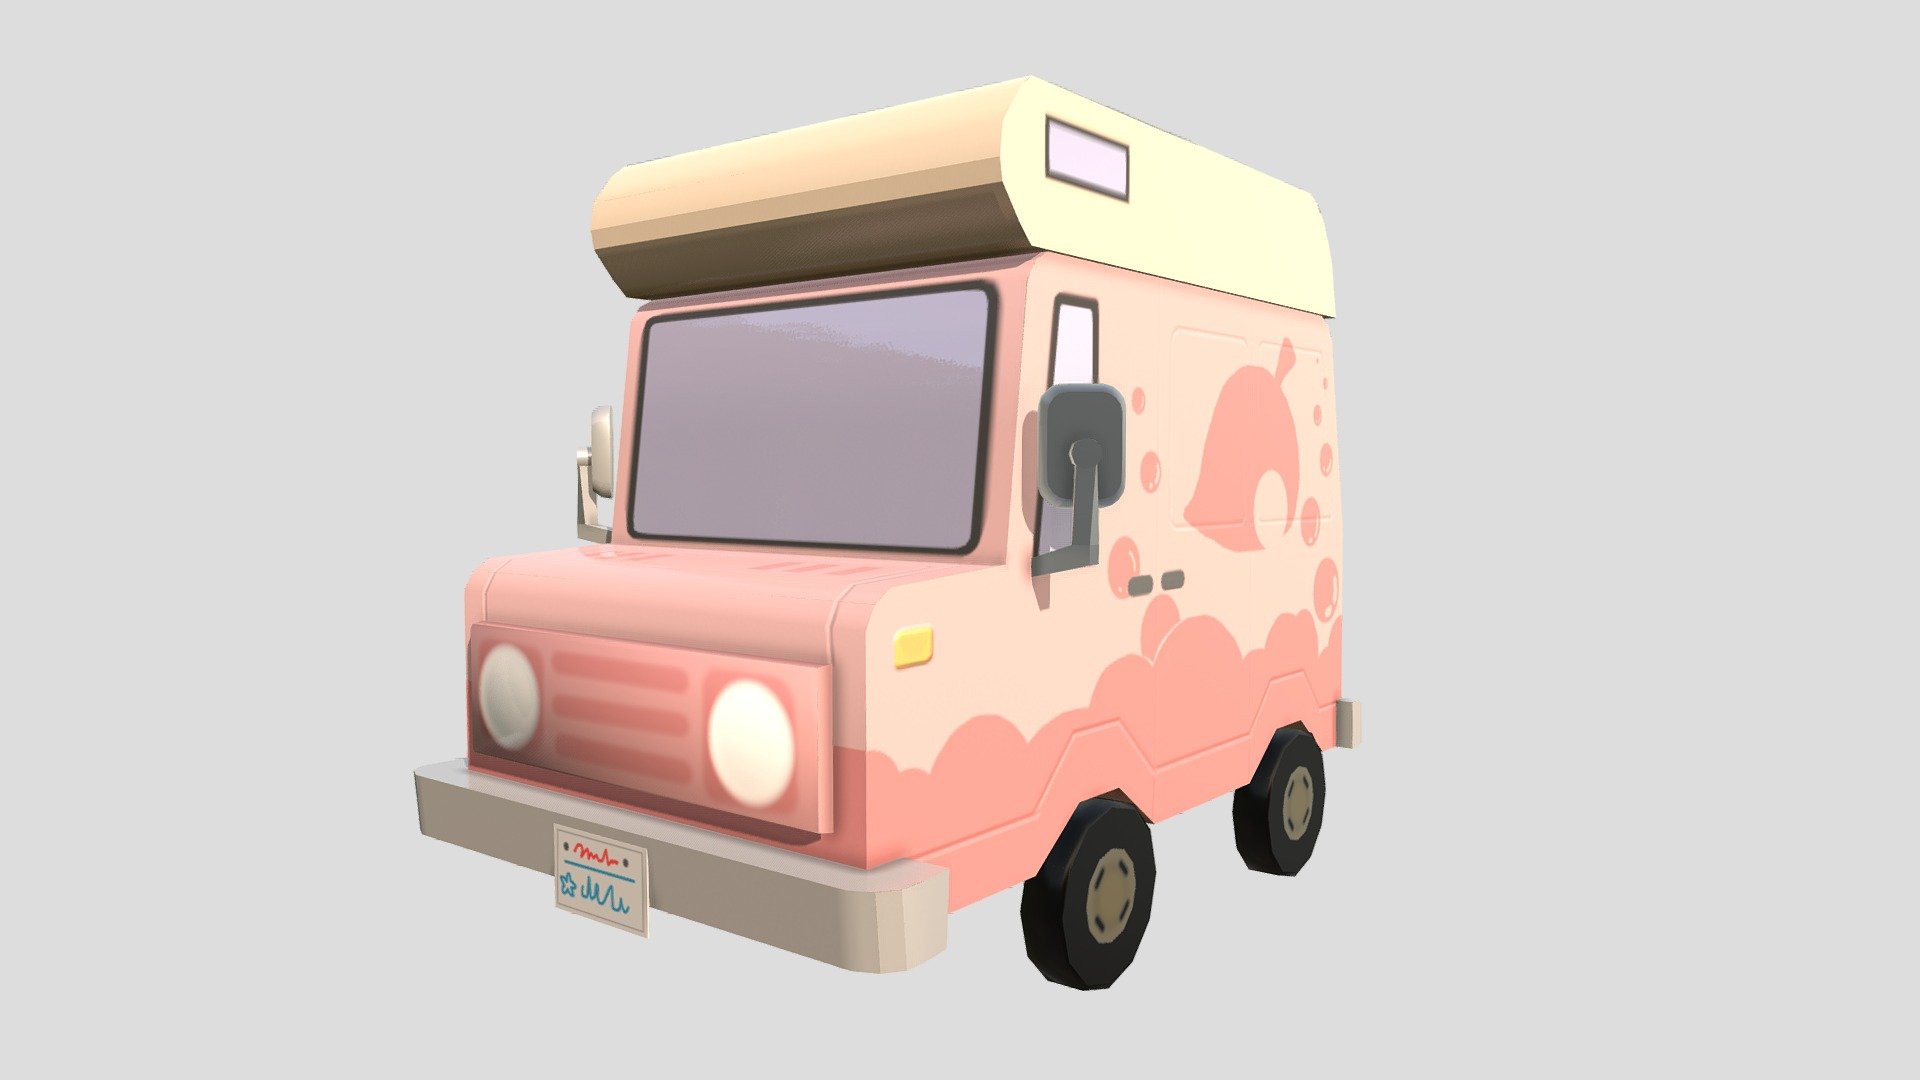 Animal Crossing caravan - 3D model by Leila (@LeilaAlise) 3d model